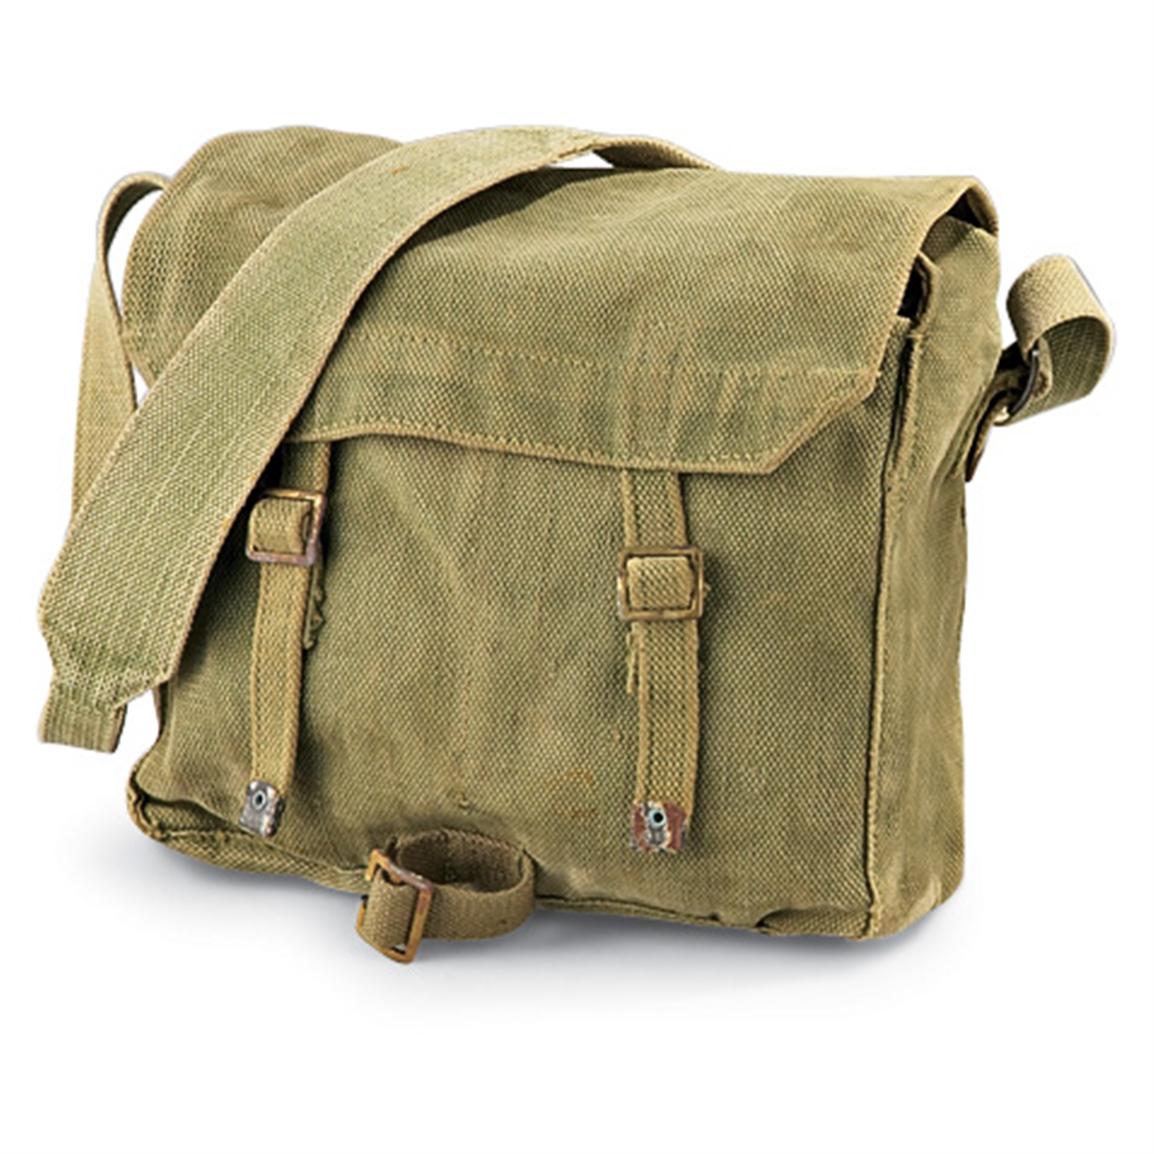 Used Dutch Military Shoulder Bag, Olive Drab - 118454, Shoulder ...